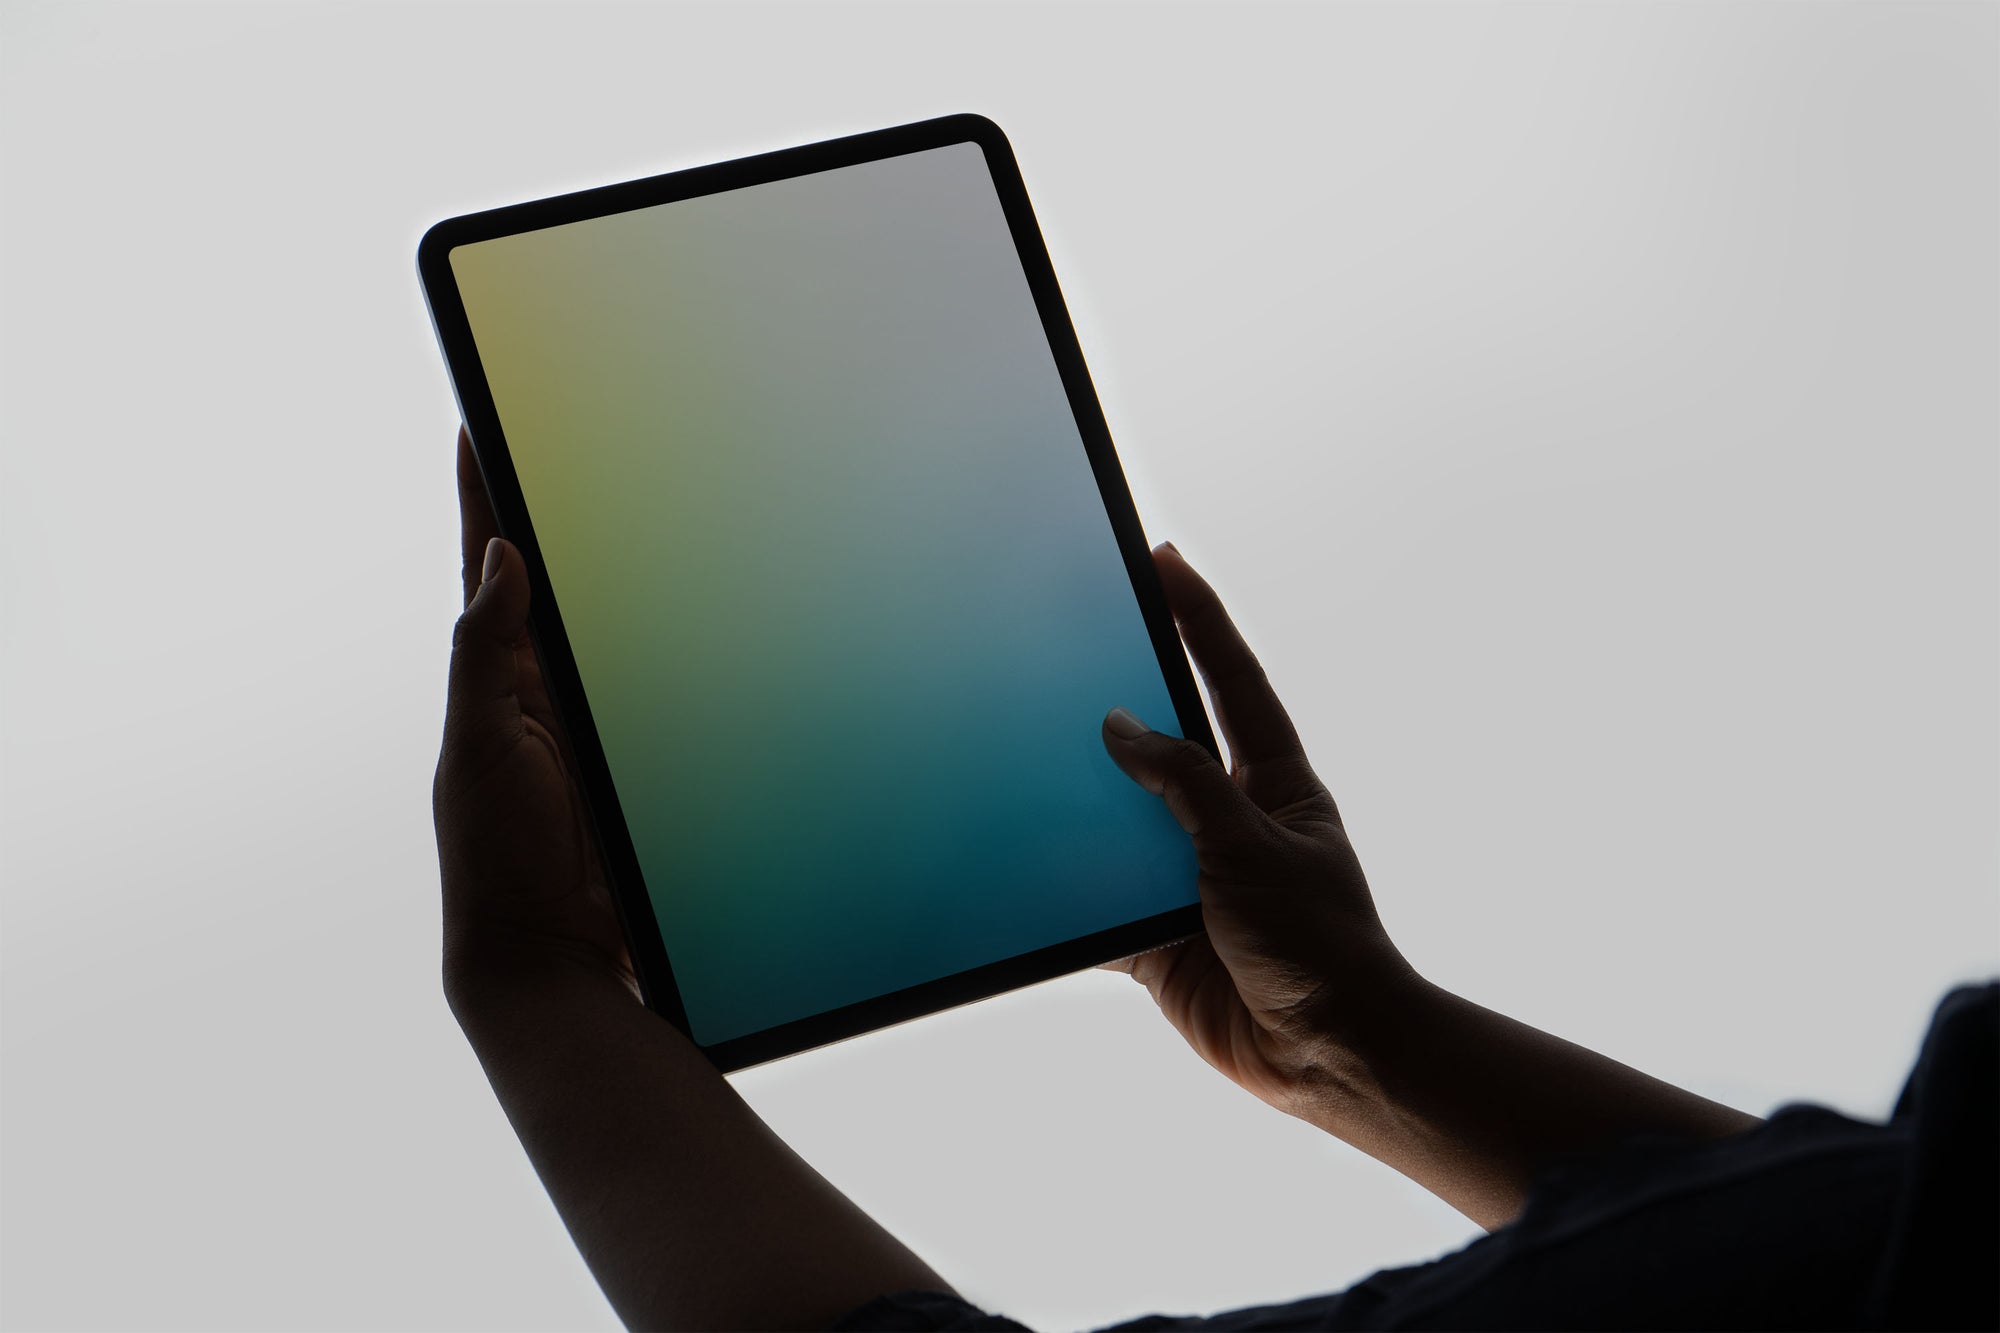 BL04 — iPad Pro